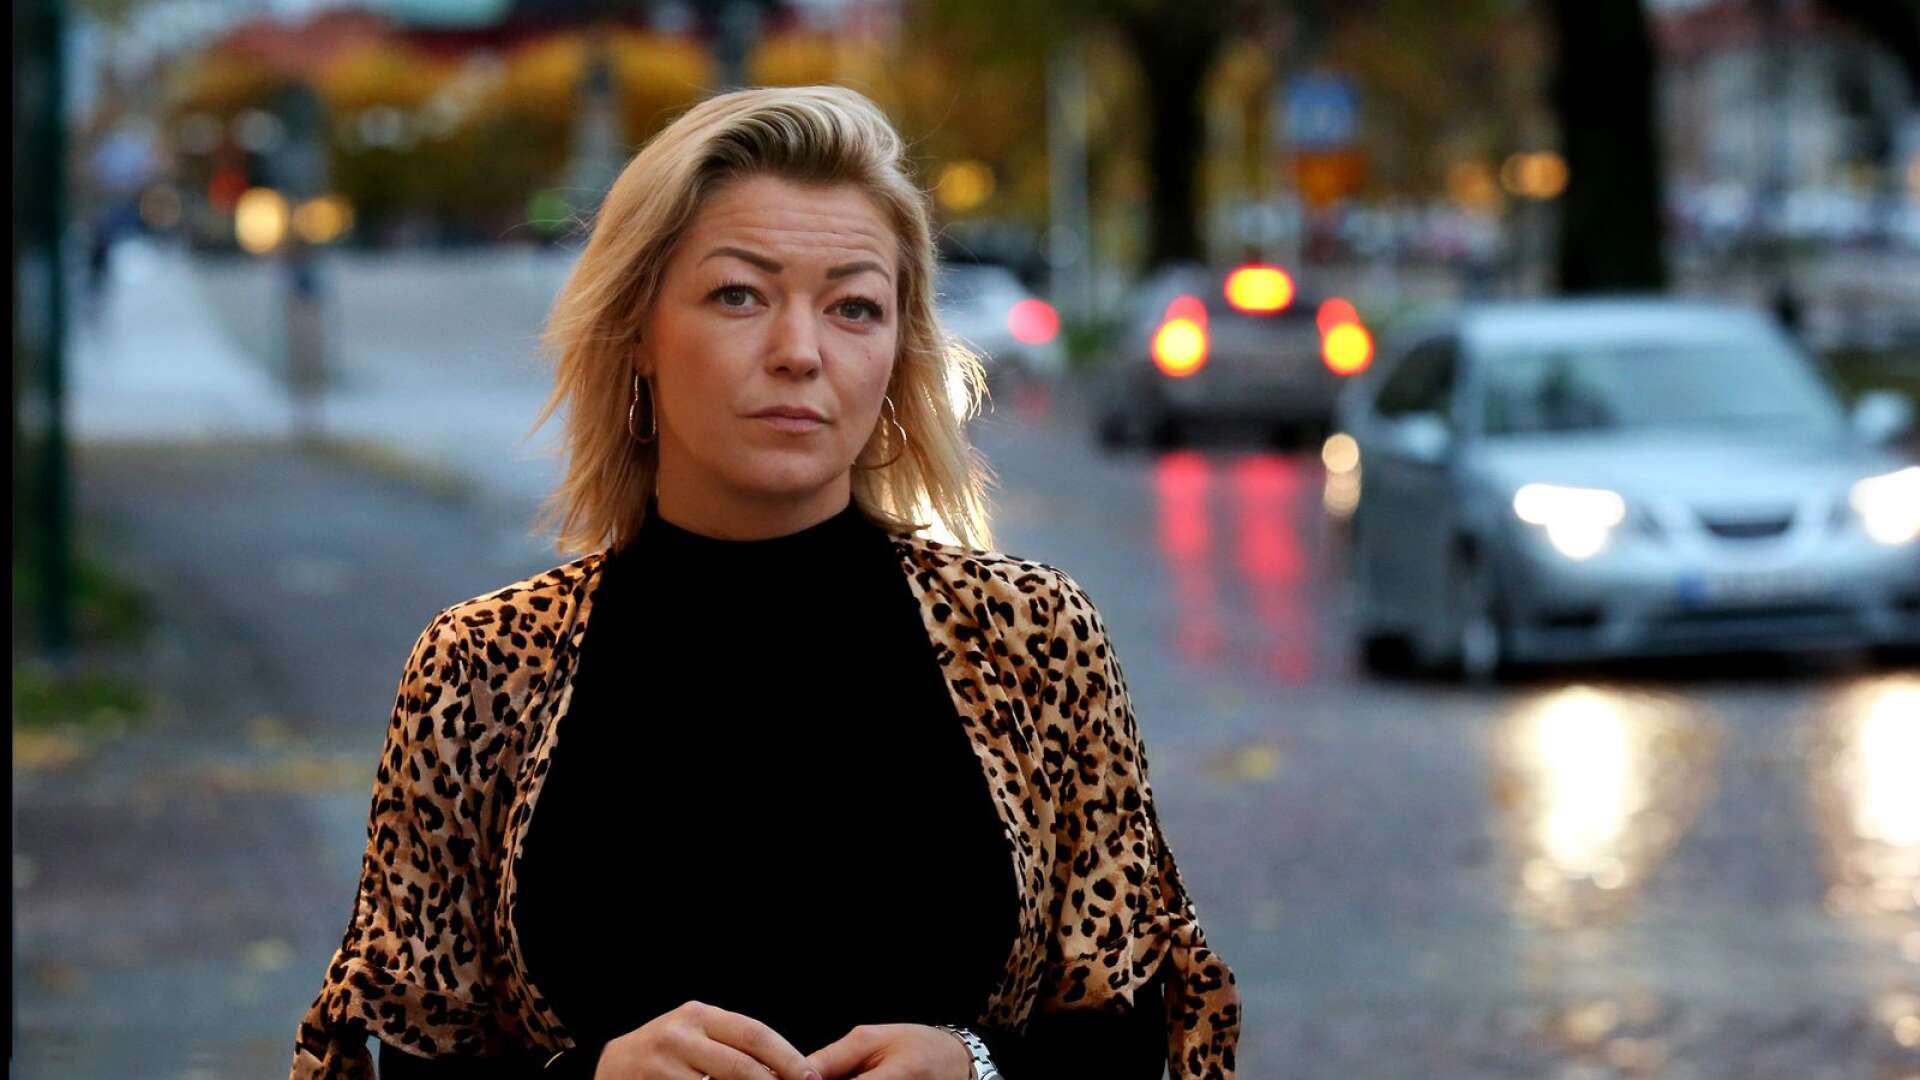 Att kommande beslut om nedläggning av akuten i Lidköping väcker oro kan vice ordföranden i sjukhusstyrelsen Frida Nilsson (C) har förståelse för. Men oron har i vissa fall övergått i hat, vilket drabbat såväl henne som familjen. 